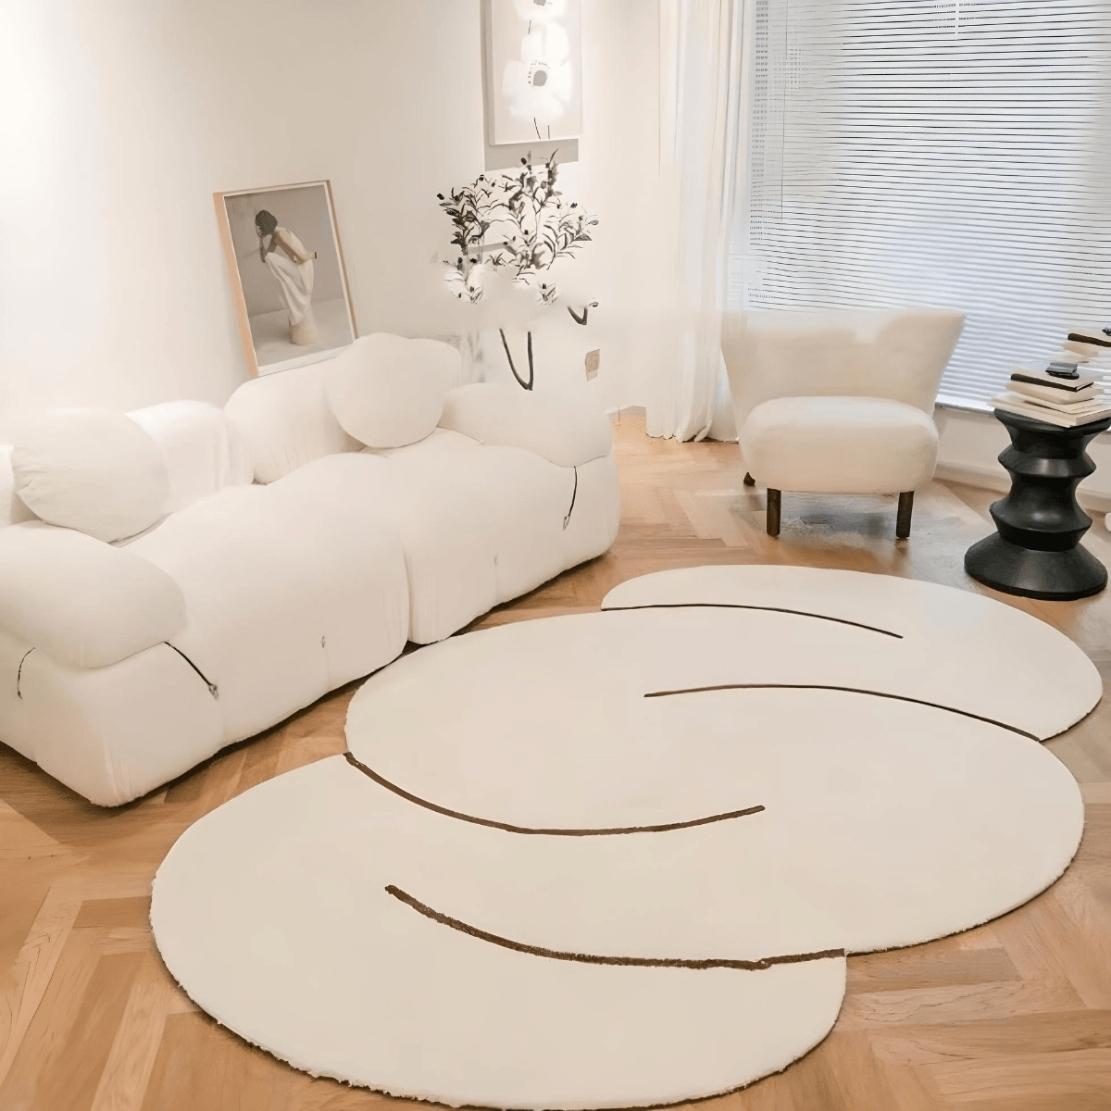 White bubble cloud living room floor carpet